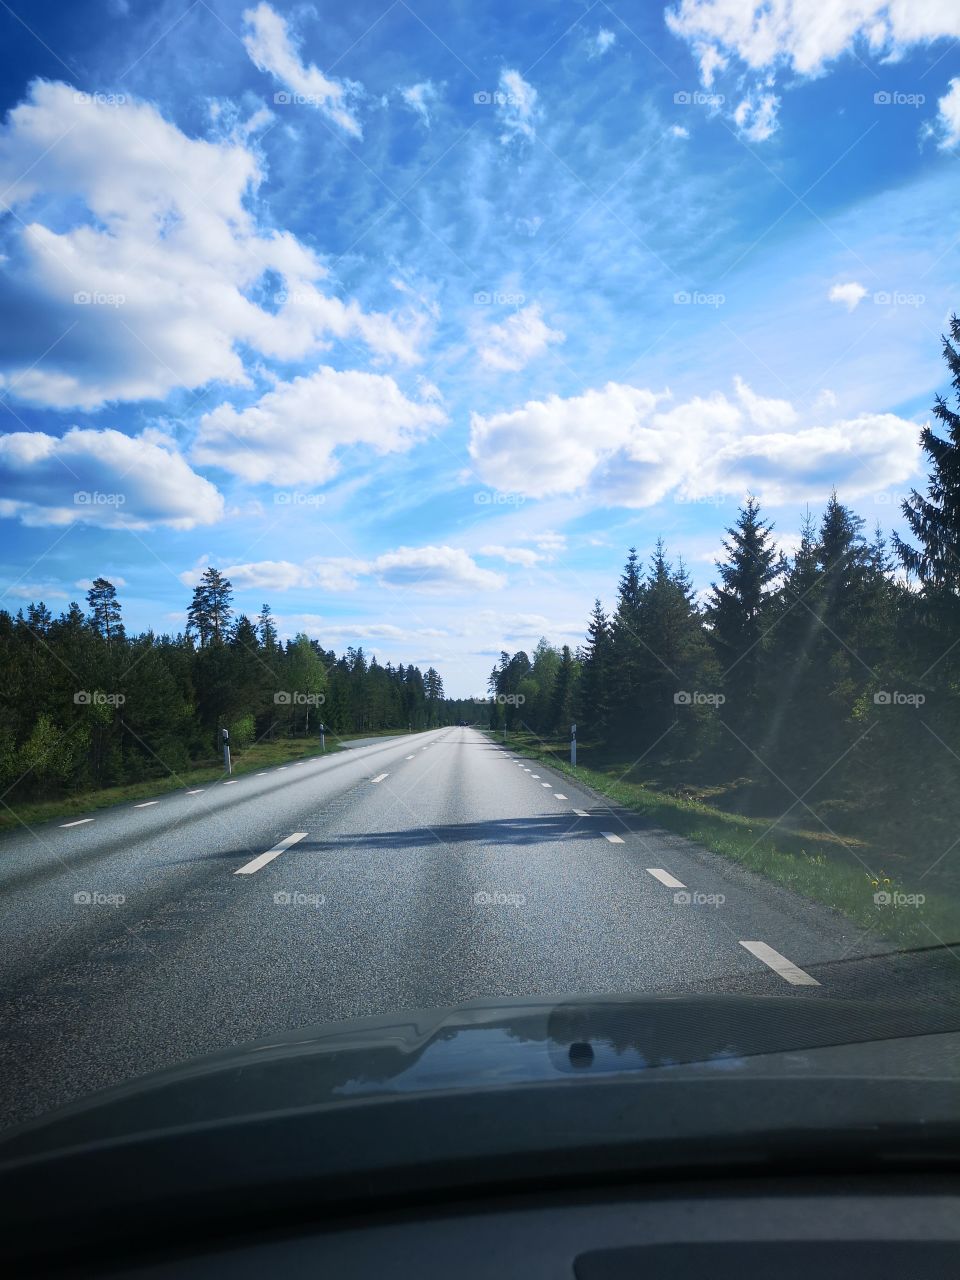 Roadtrip in Sweden!